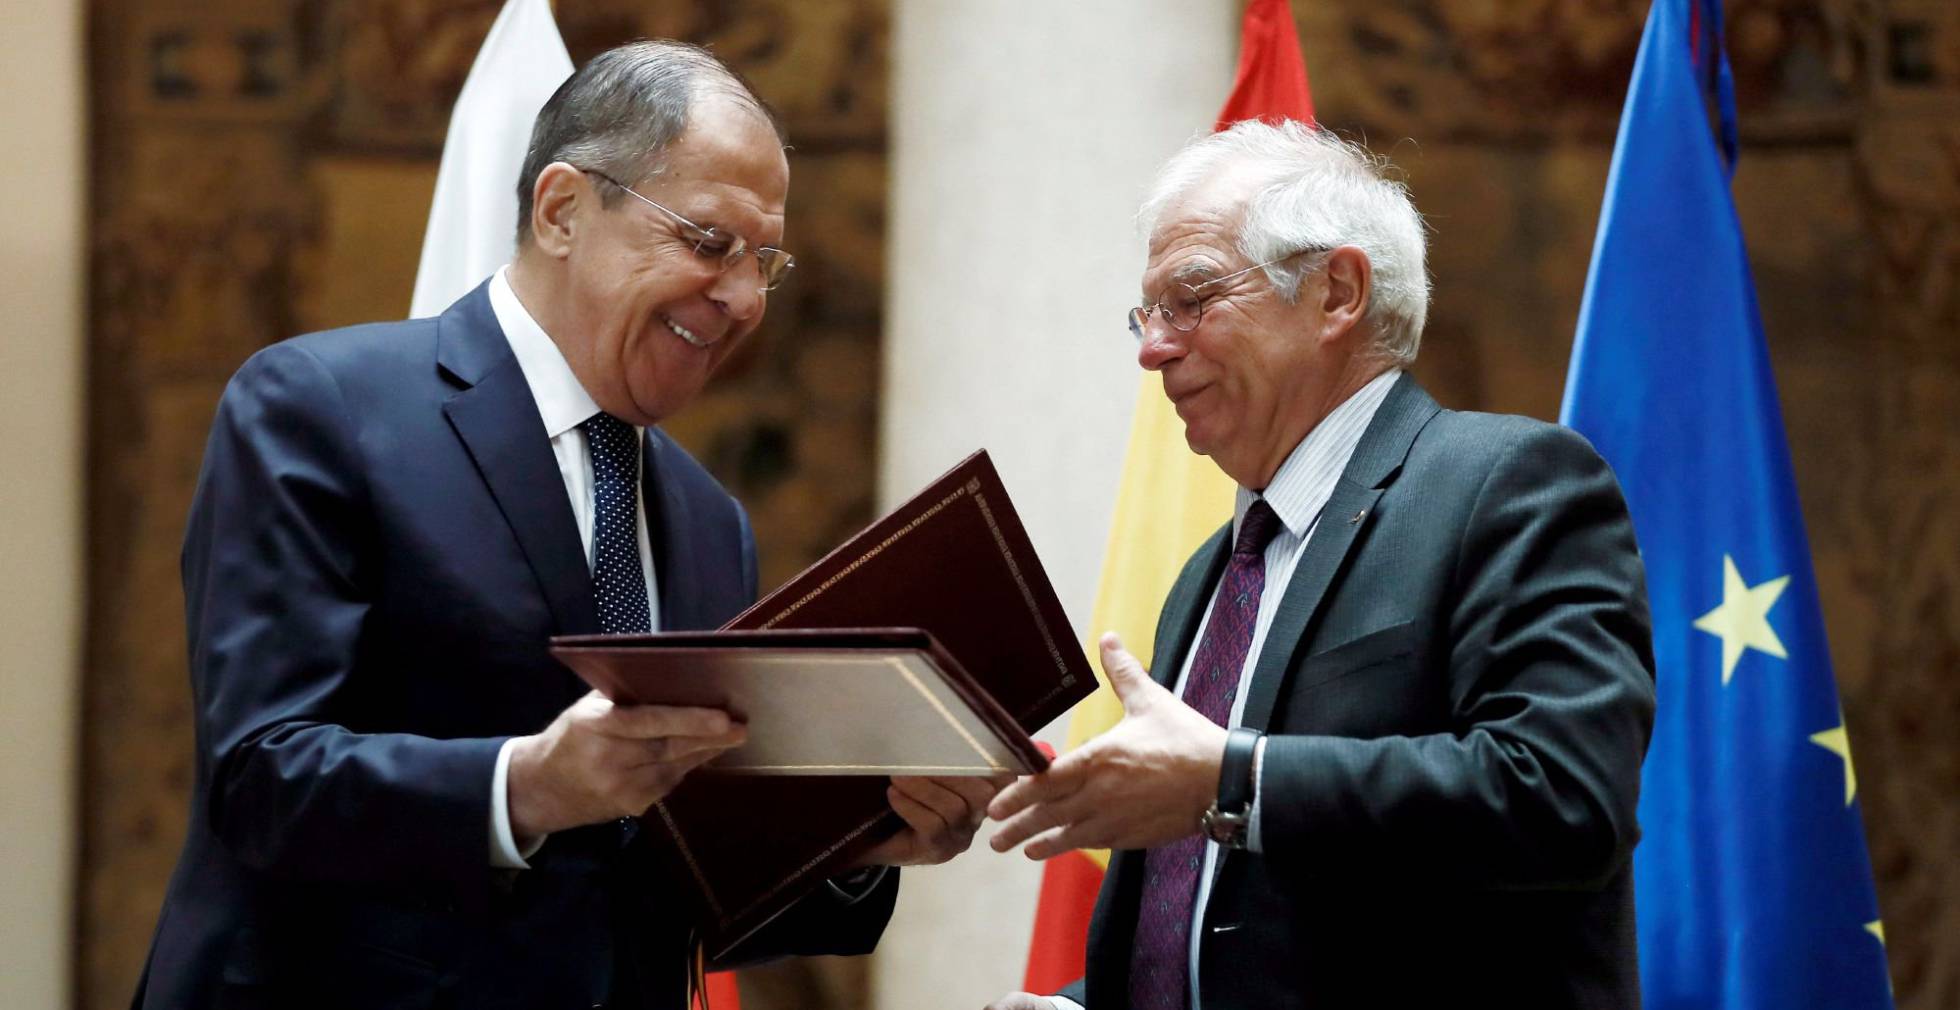 Tensió diplomàtica entre Rússia i Espanya per les especulacions sobre espies